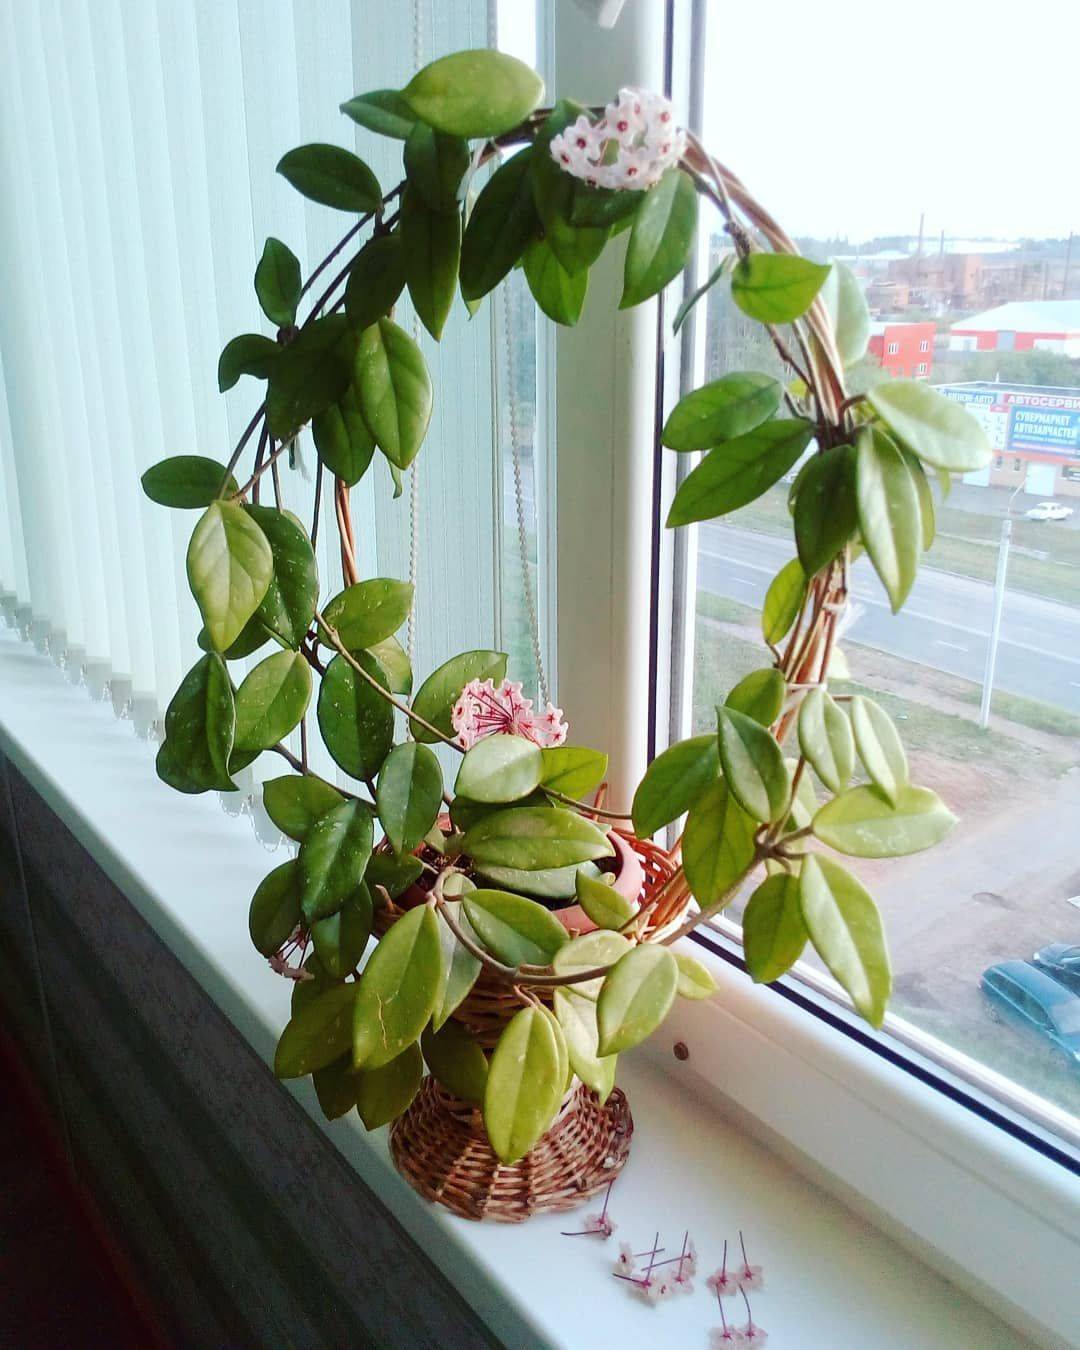 Хойя комнатное растение фото, цветок восковой плющ можно ли держать дома, отзывы